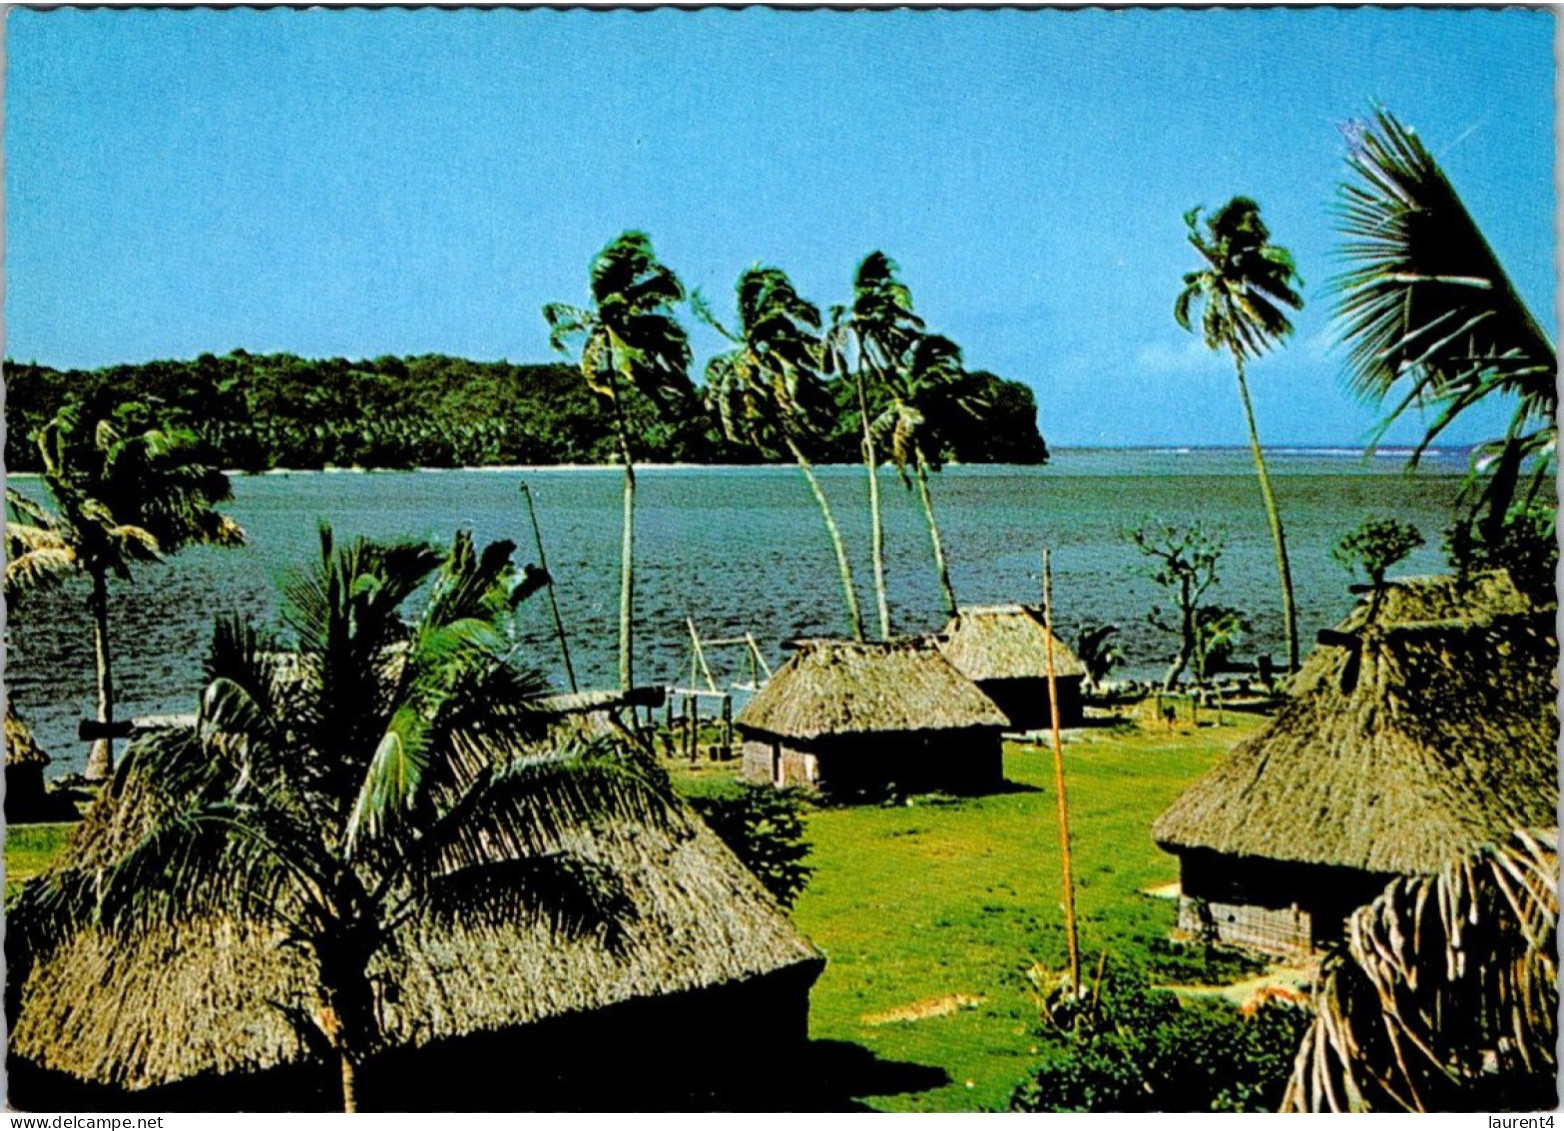 (3 R 41) Typical Fijian Village - Fidji